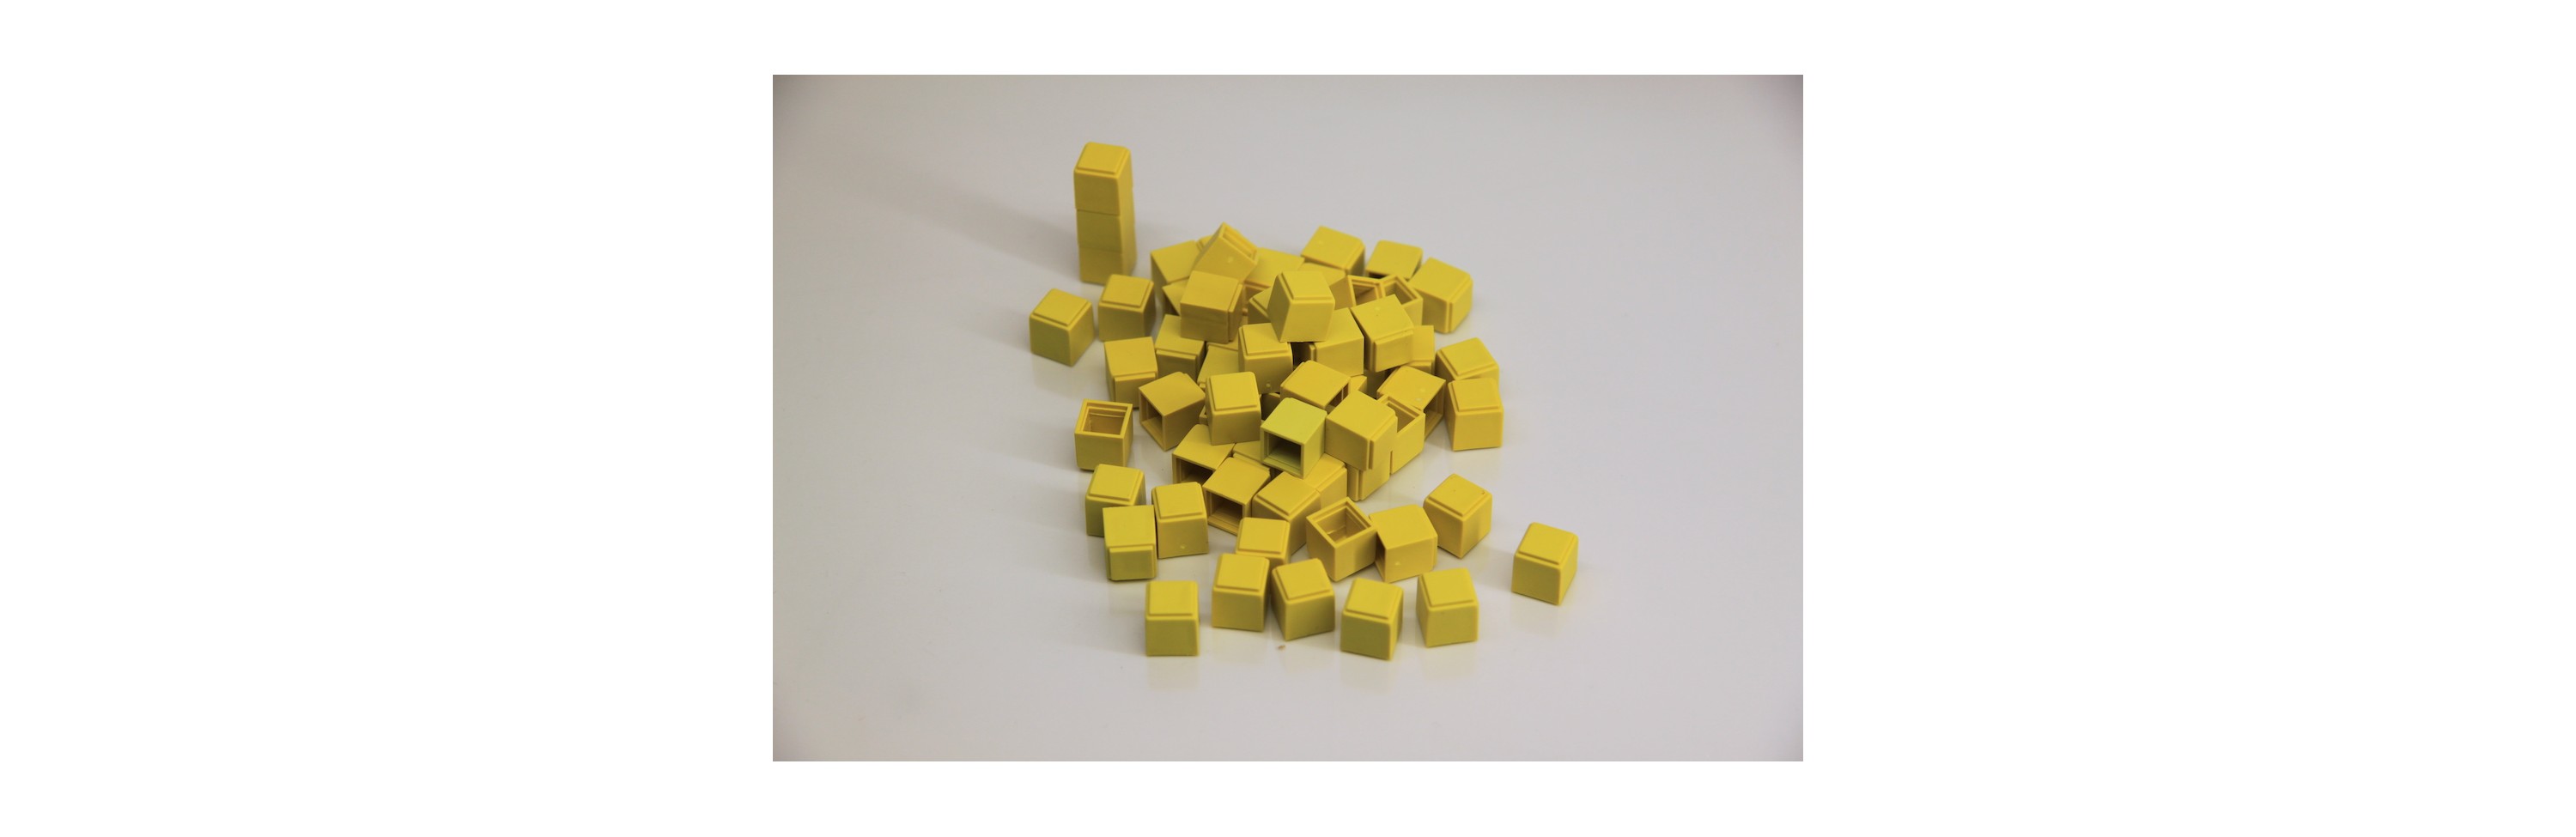 Wissner® aktiv lernen - Einerwürfe 100 Stück (gelb) RE-Plastic®